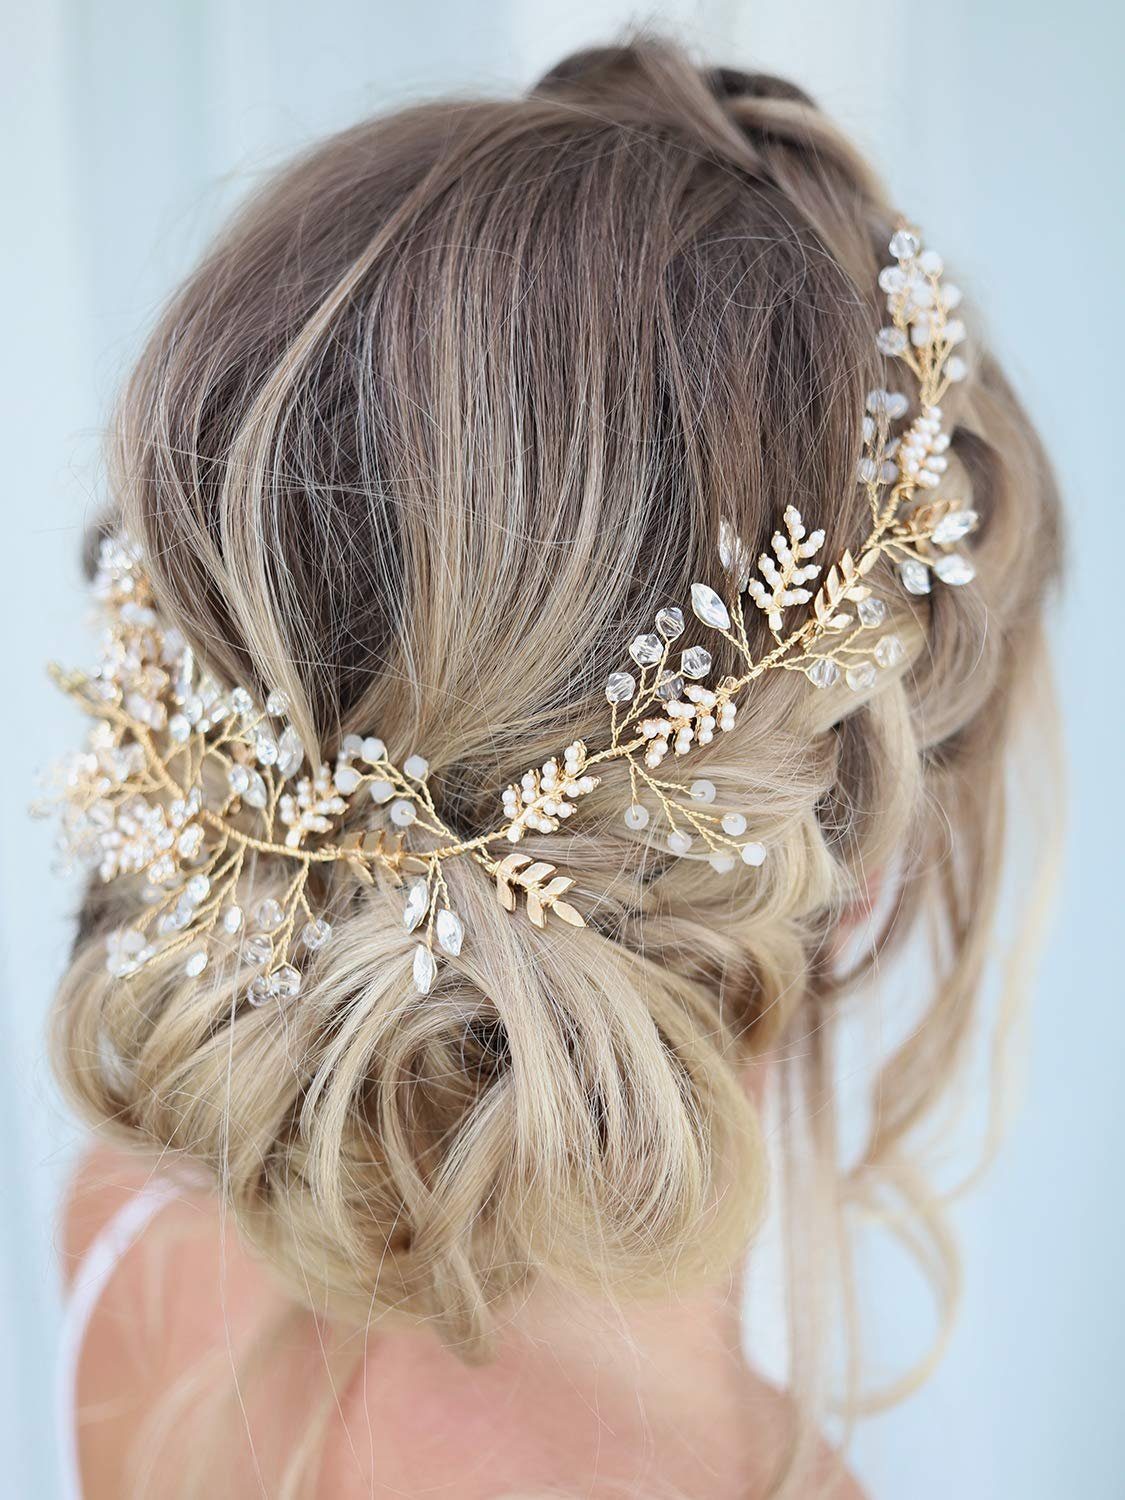 KSYLH Diadem Gold Braut Haarschmuck Hochzeit Blume Kristall, Stirnbänder  Haarband Diadem Tiara